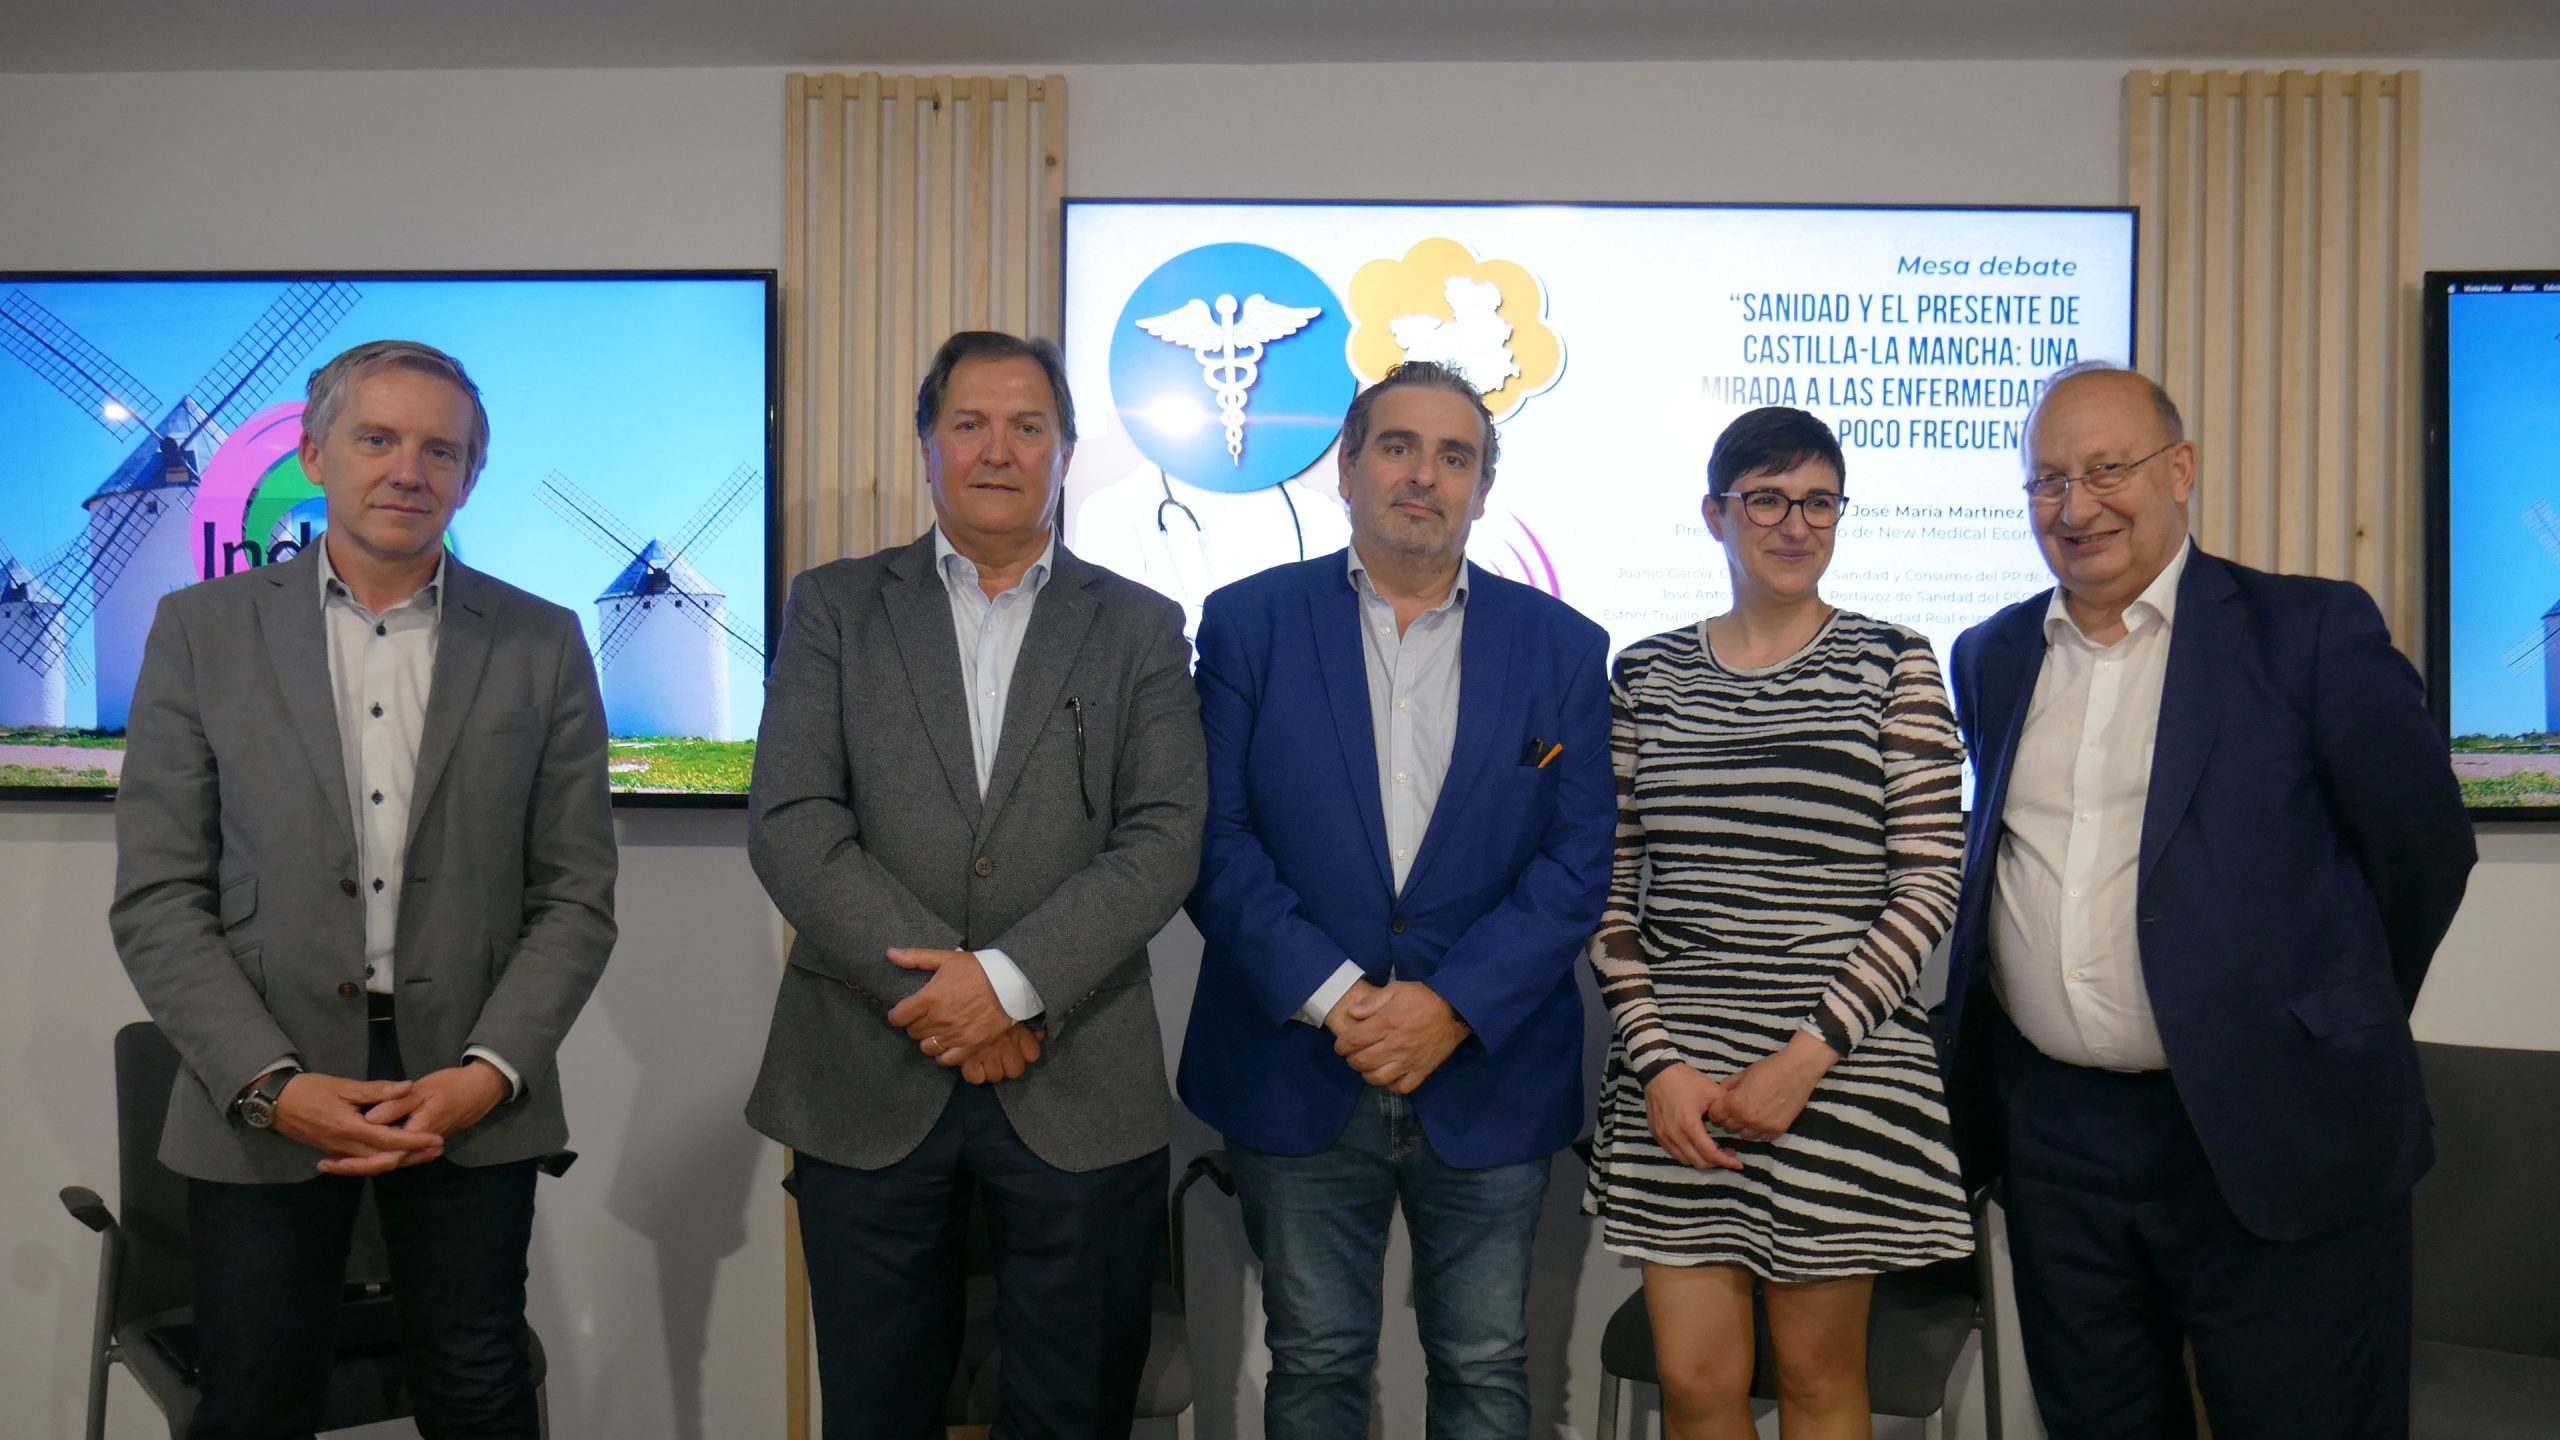 La sanidad y el presente de Castilla-La Mancha, protagonistas del debate político organizado por Indepf y New Medical Economics